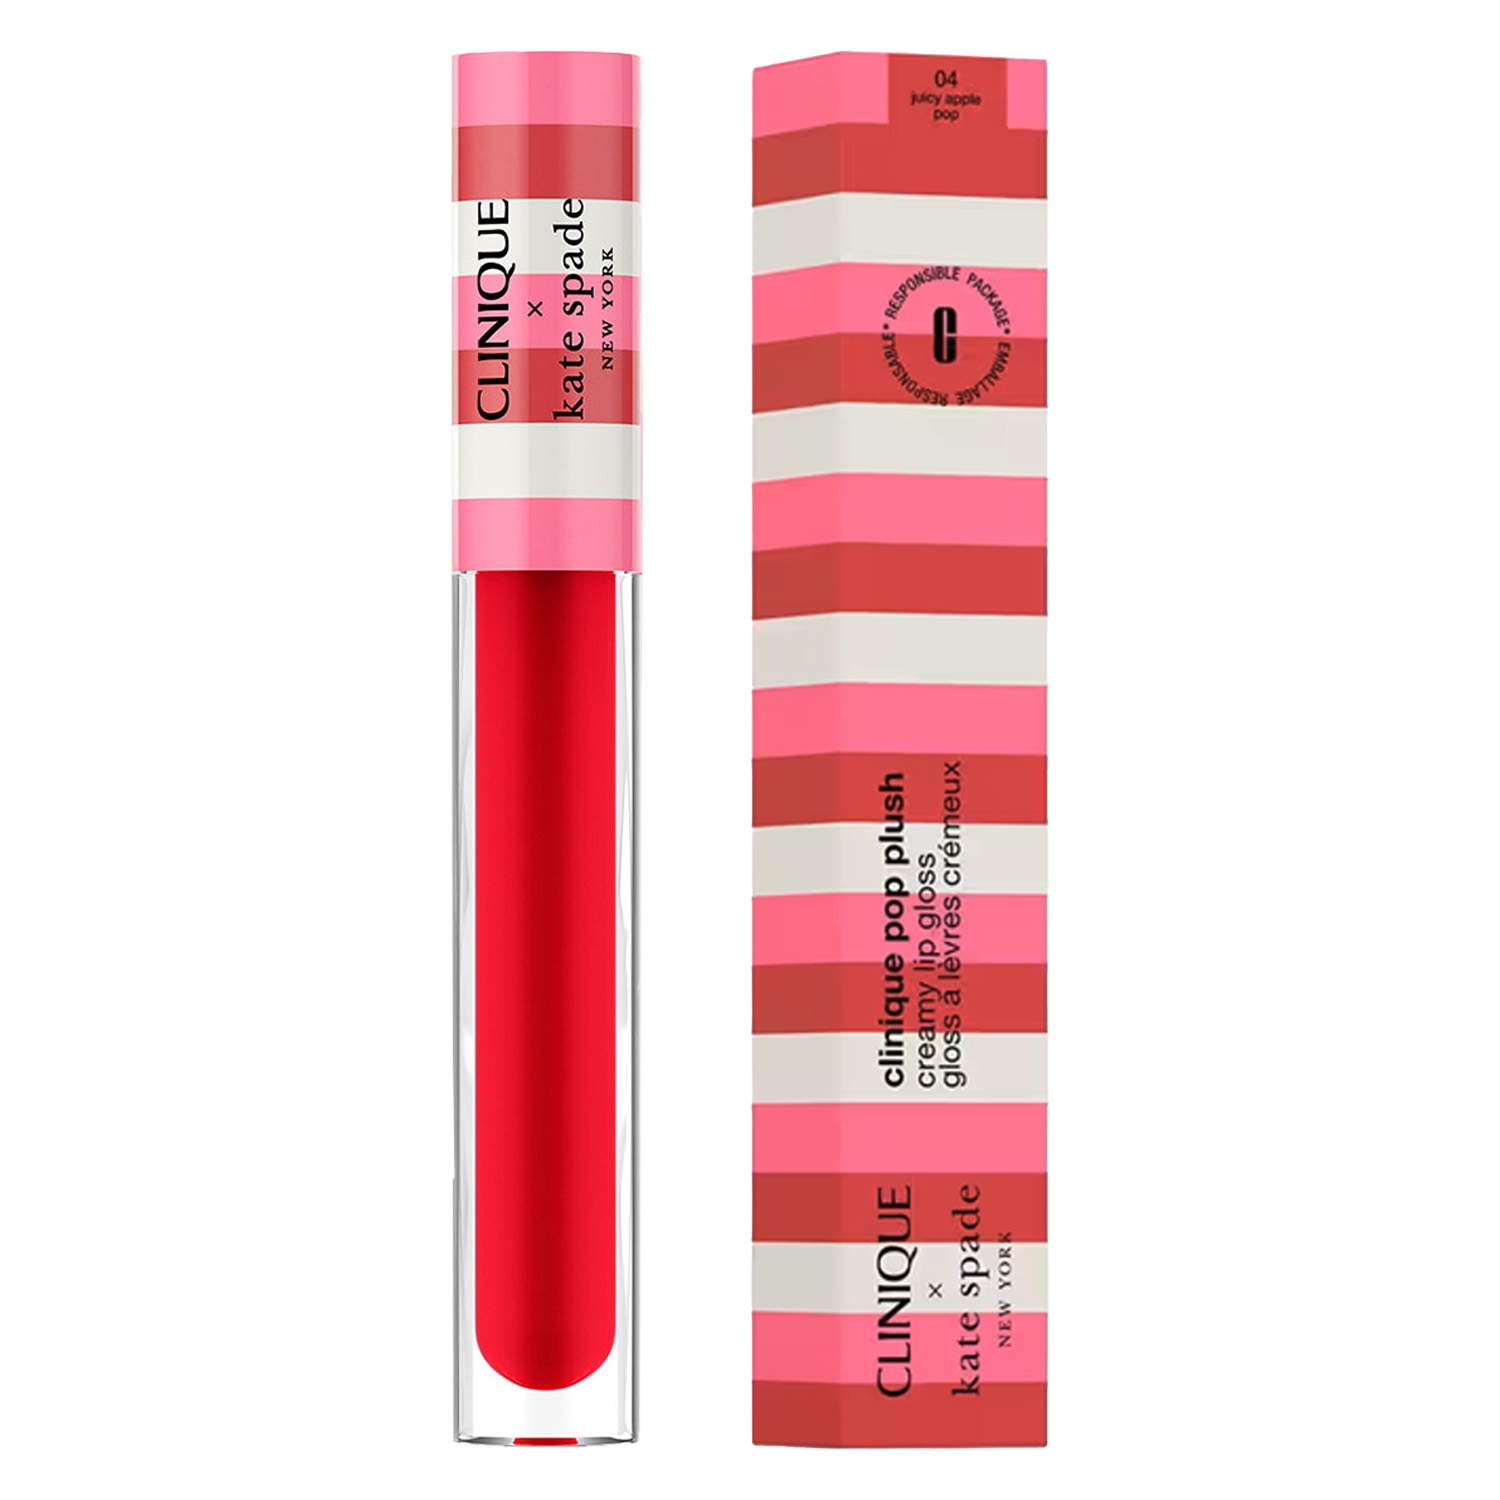 Image du produit de Clinique Lips - Decorated Kate Spade Pop Plush 04 Juicy Apple Pop